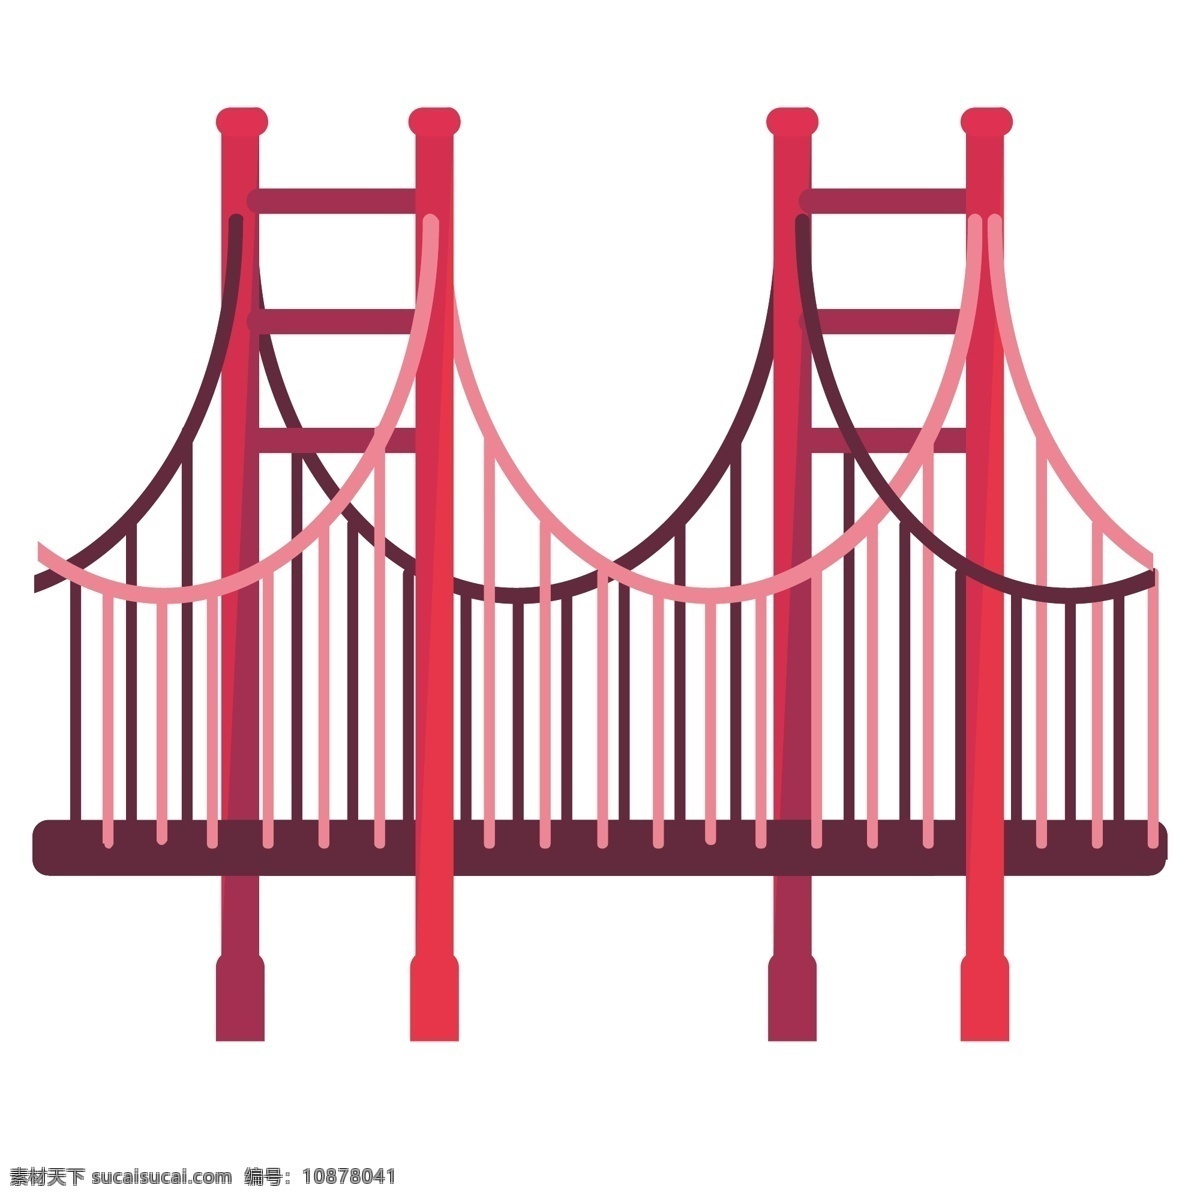 日本 金门大桥 插画 日本金门大桥 红色 创意金门大桥 立体金门大桥 卡通金门大桥 金门大桥插画